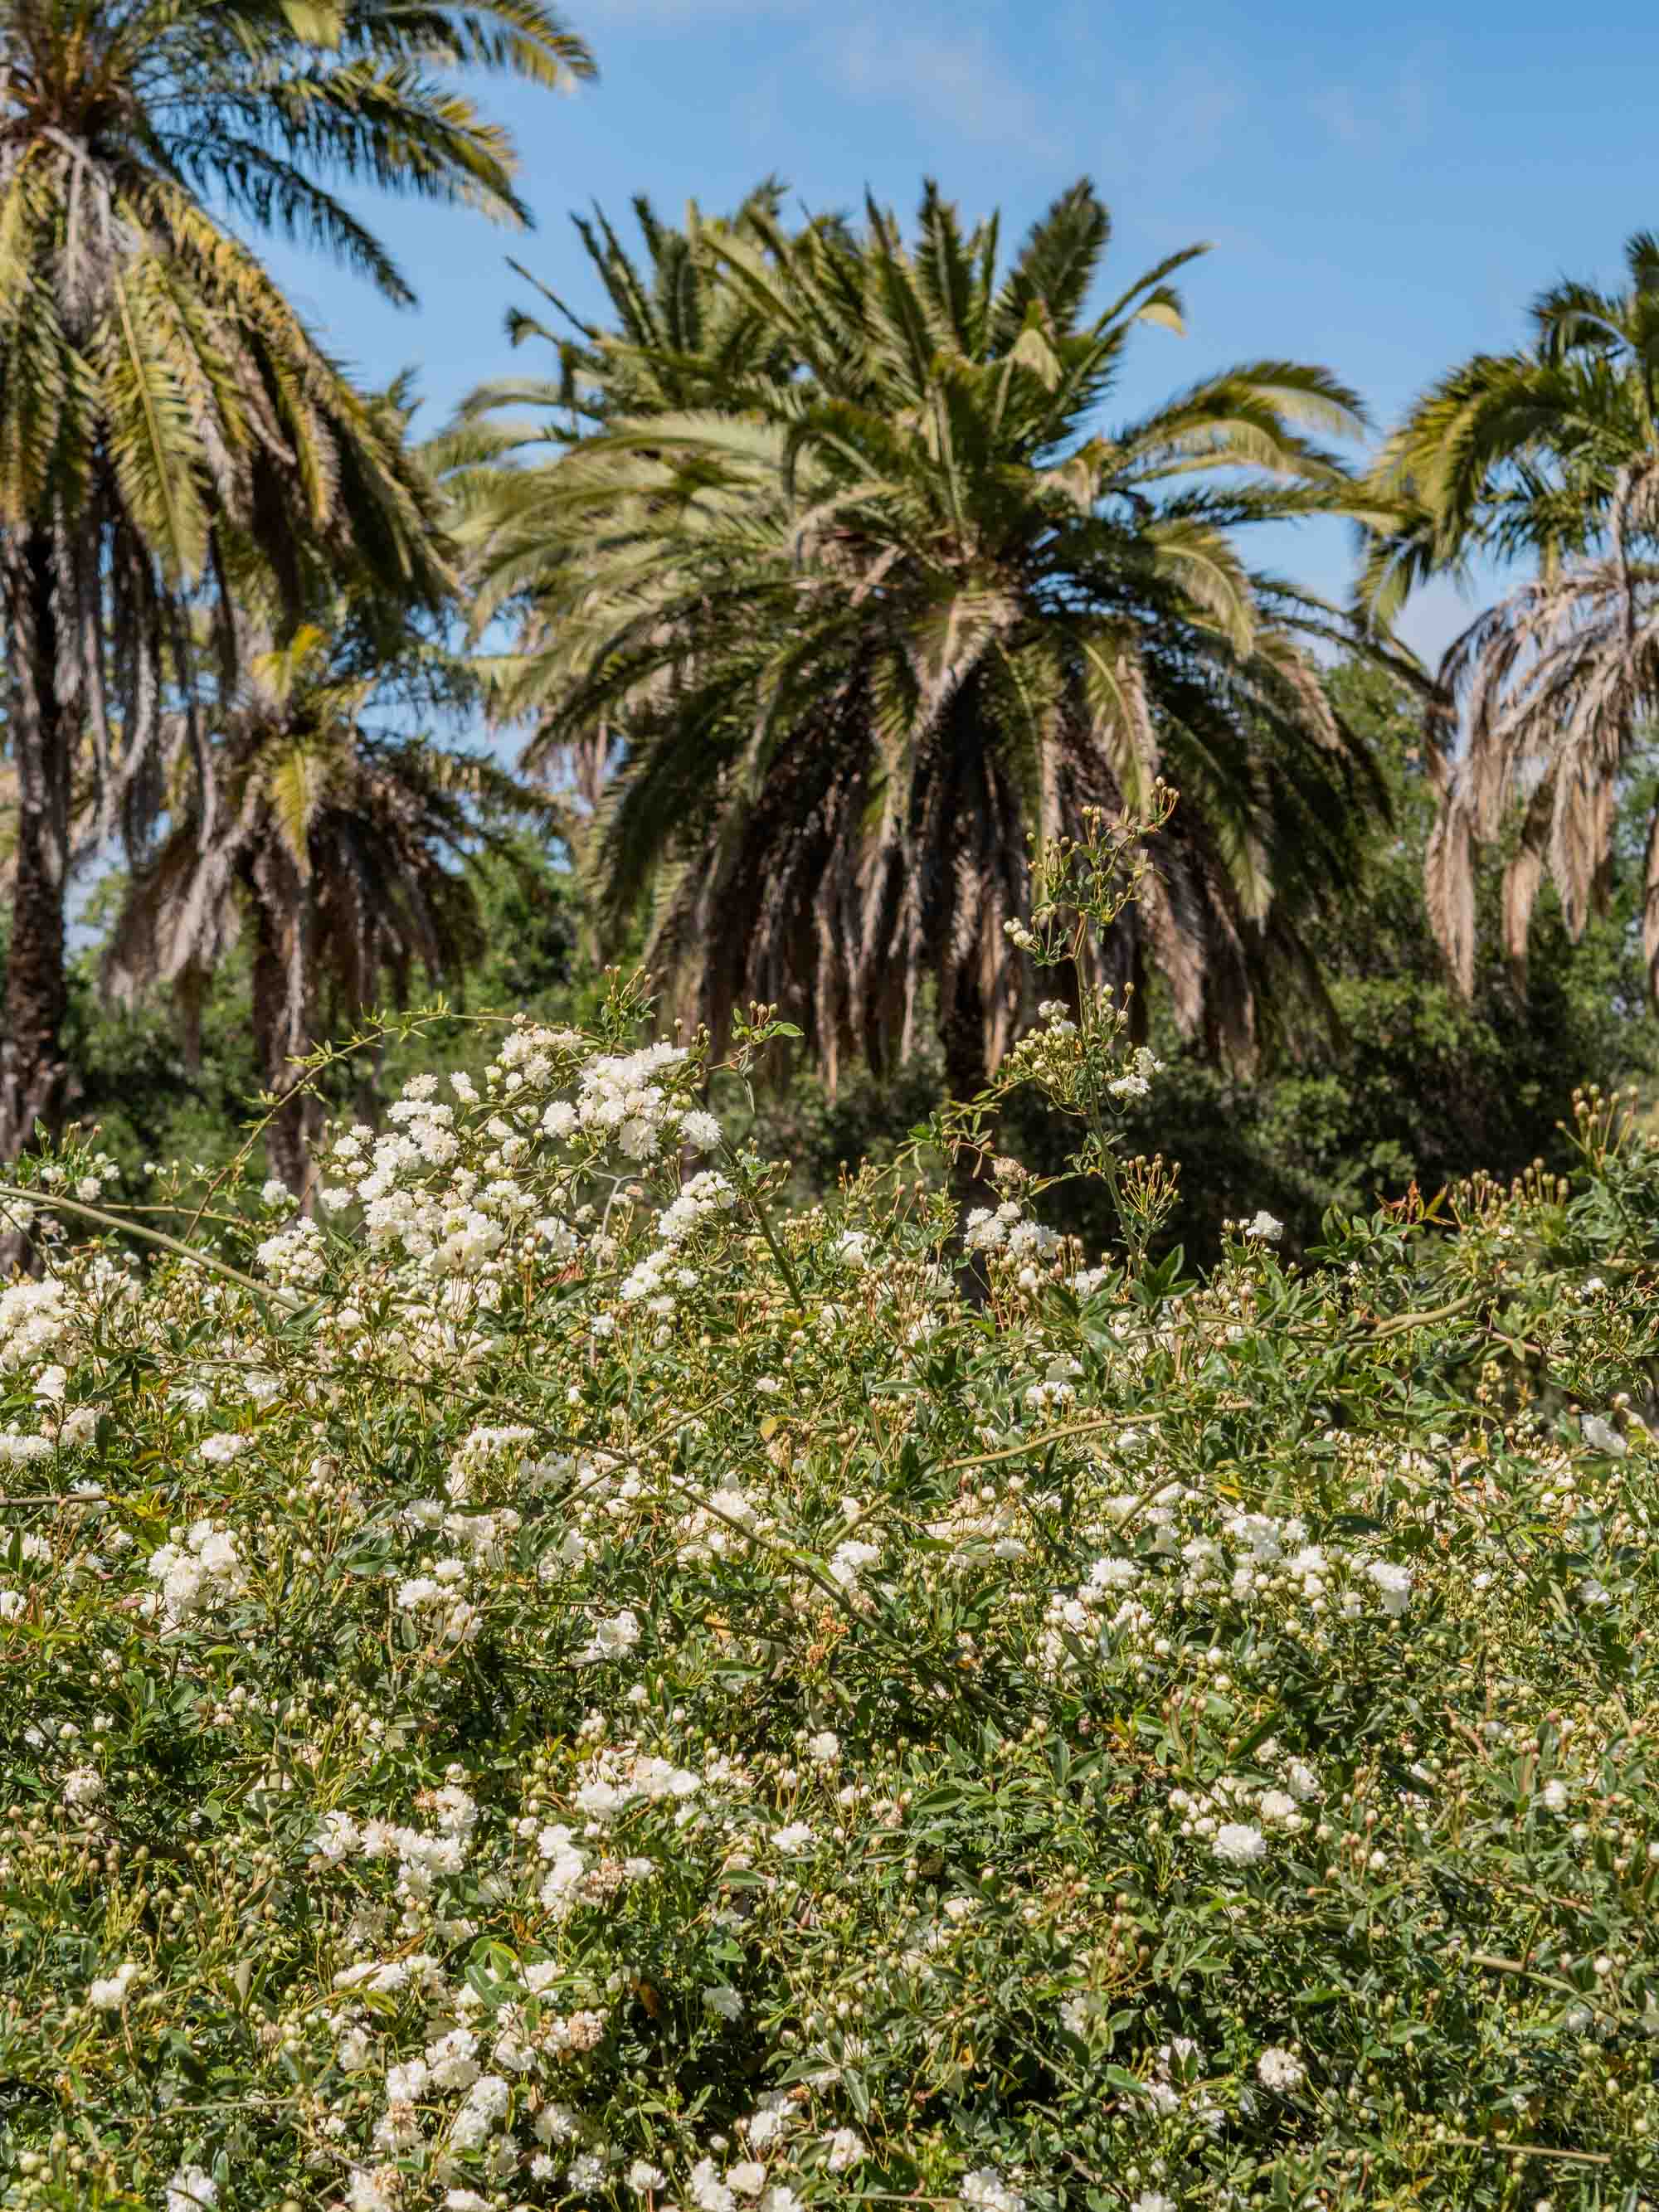 Santa Barbara Mission Rose Garden | Photography by Carla Gabriel Garcia